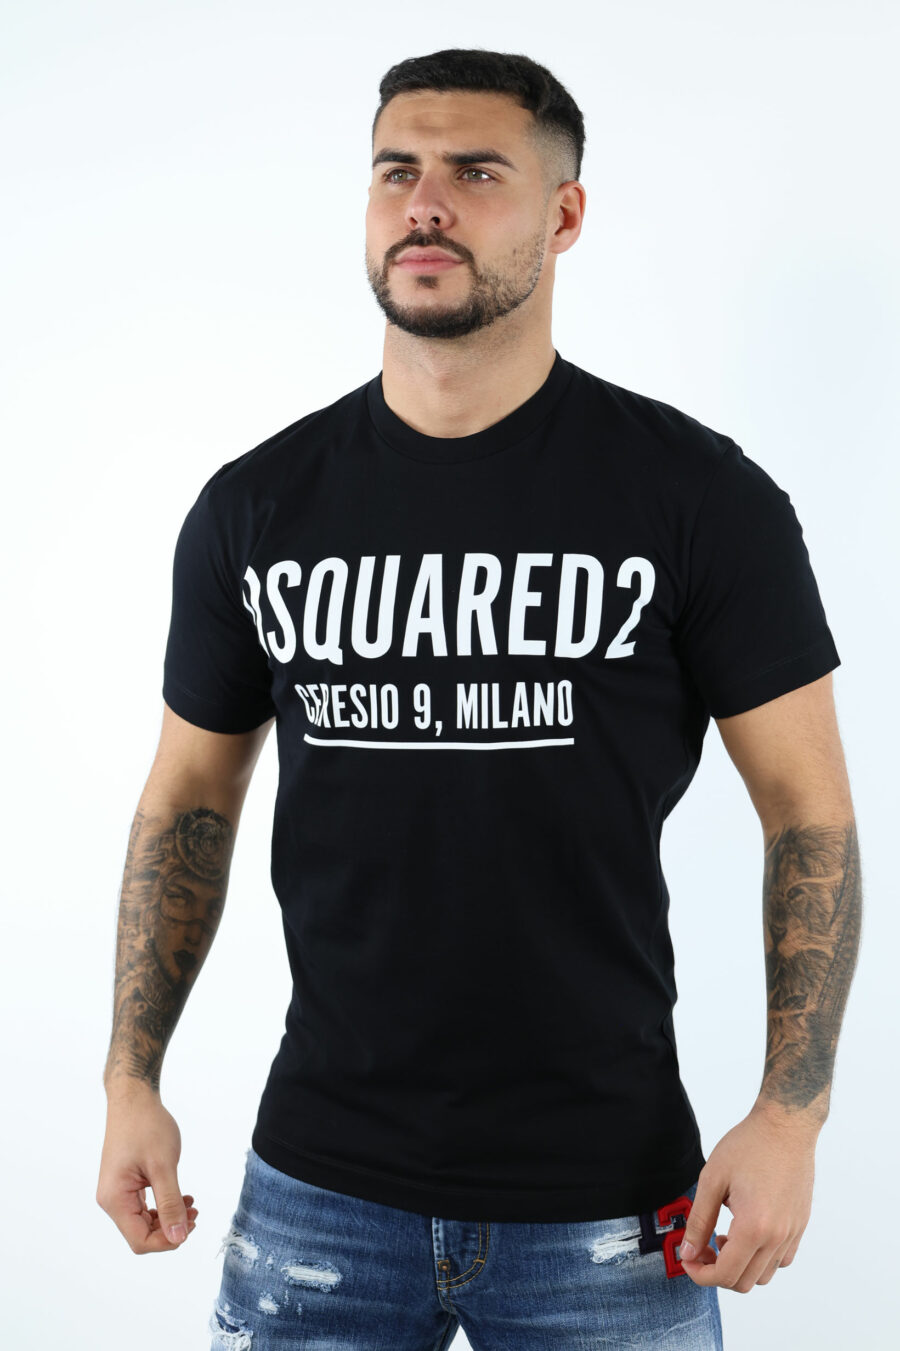 T-shirt noir avec maxilogo "ceresio 9 milano" - 106862